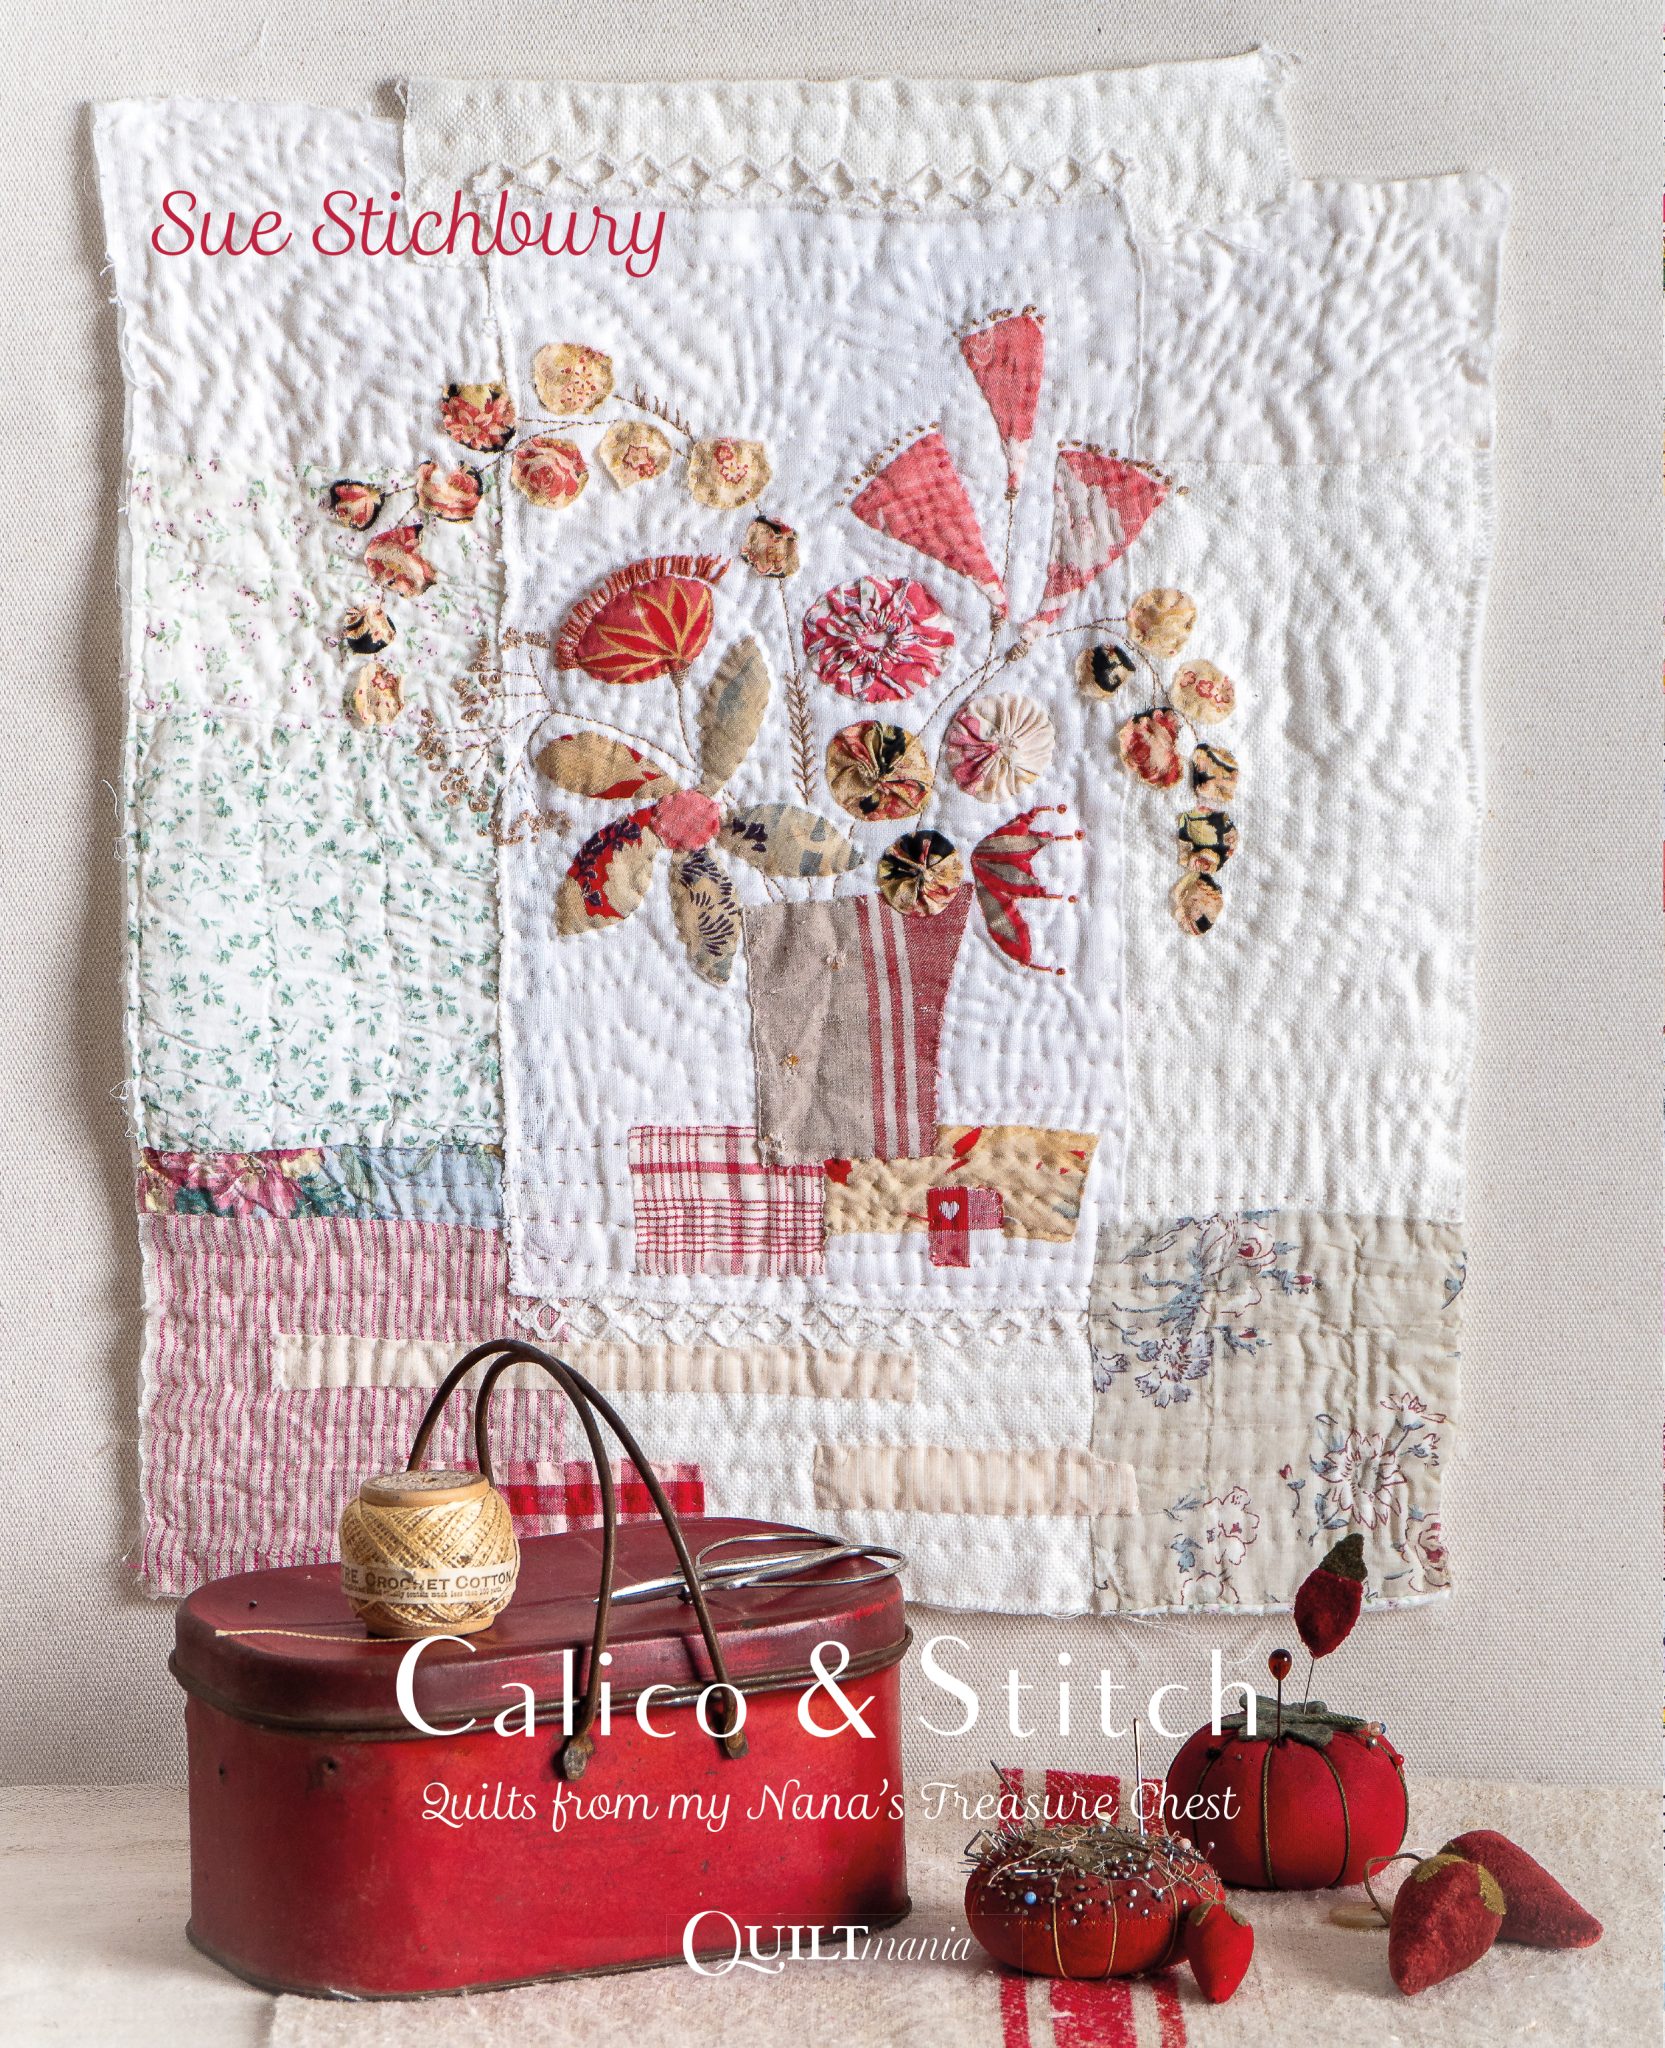 Sue Stichbury - Calico & Stitch